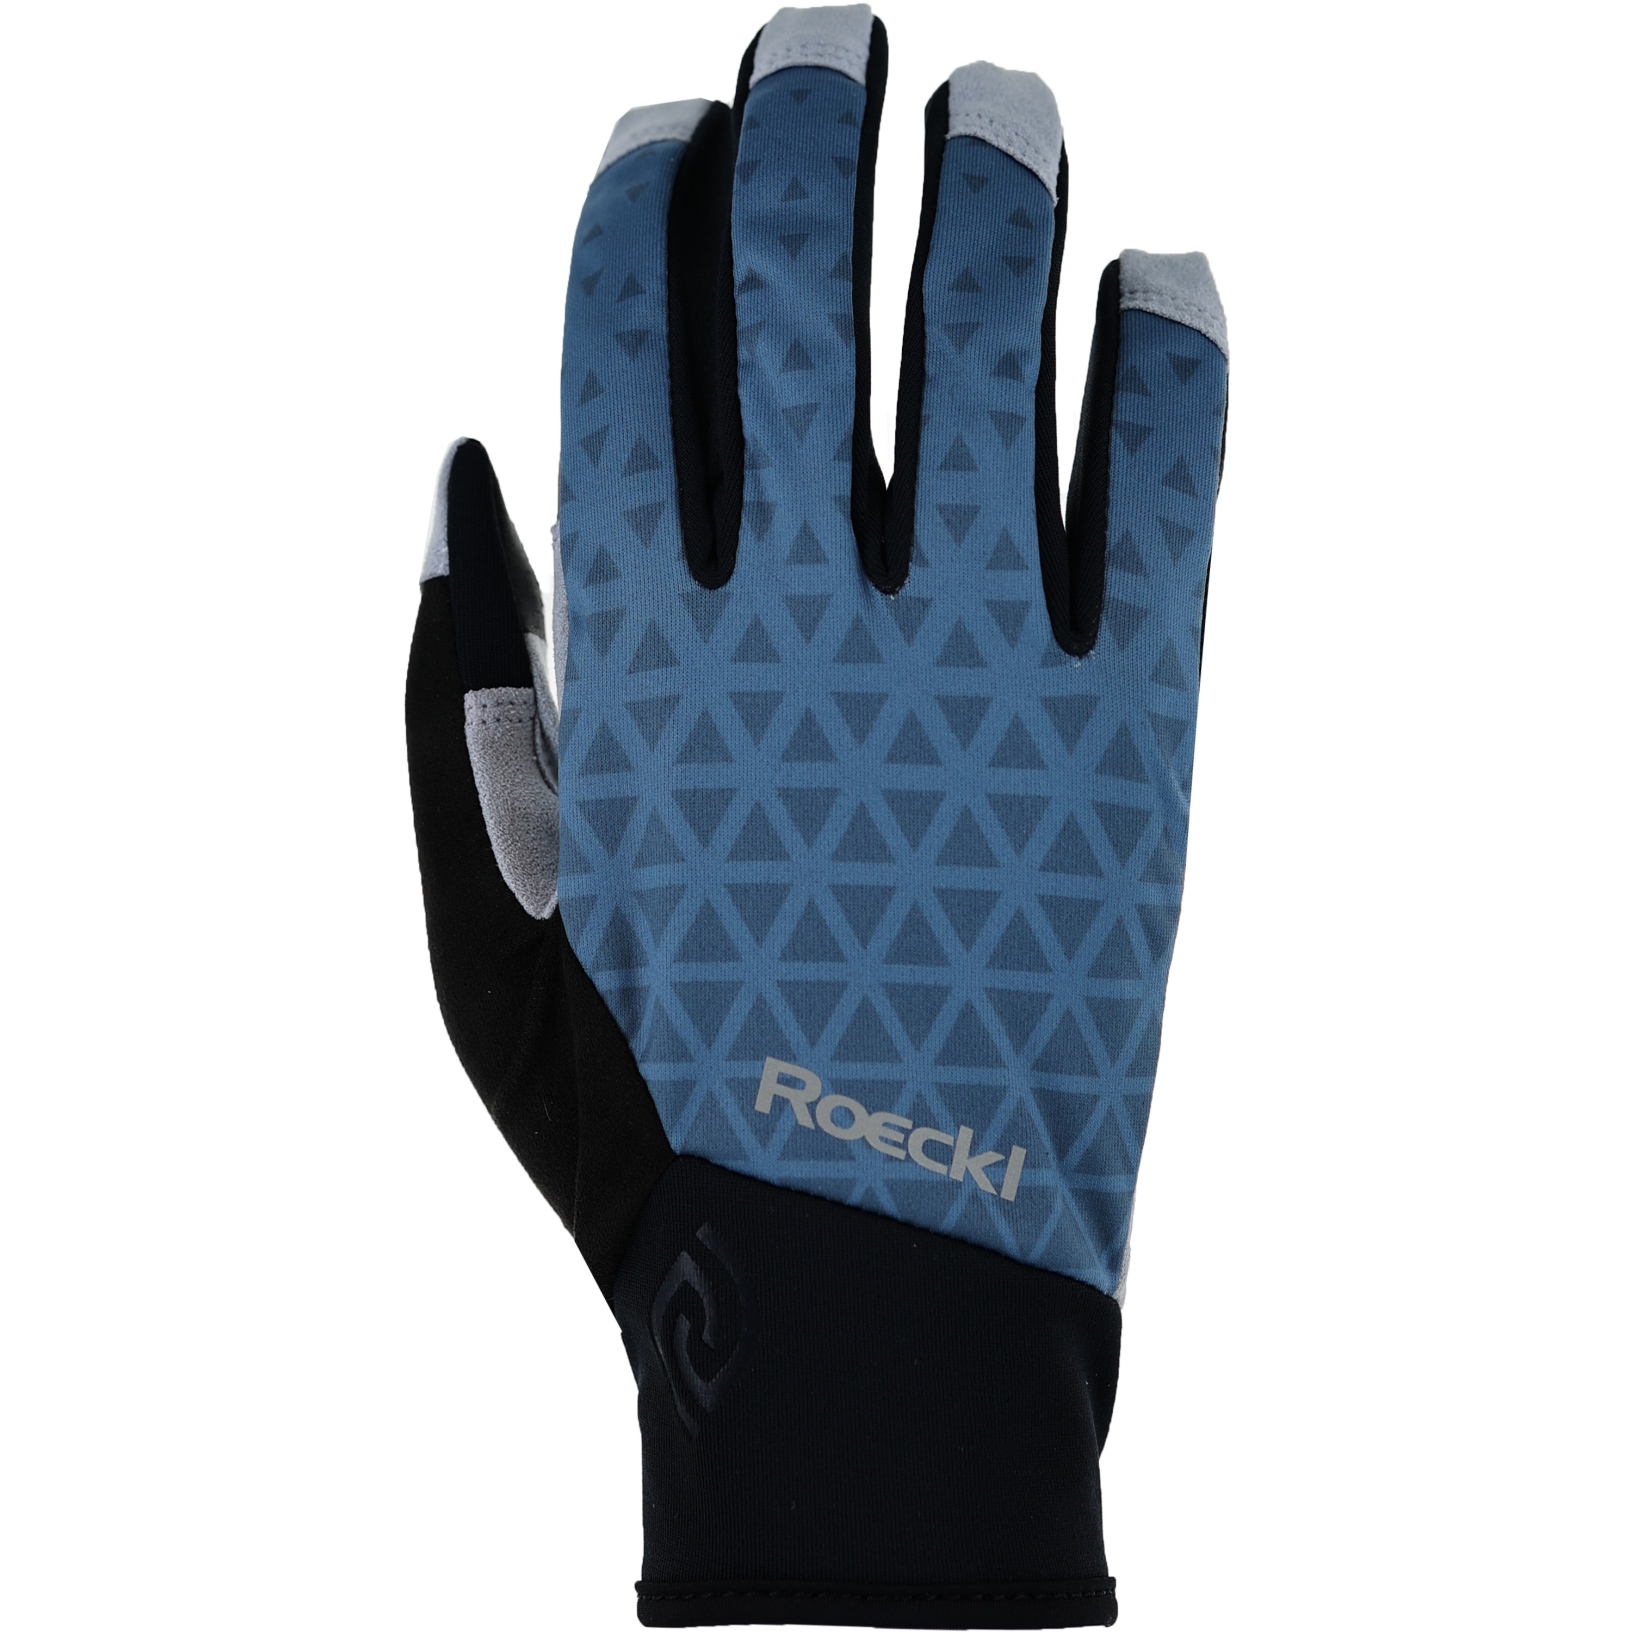 Productfoto van Roeckl Sports Ramsau 2 Fietshandschoenen - blue breeze 5460